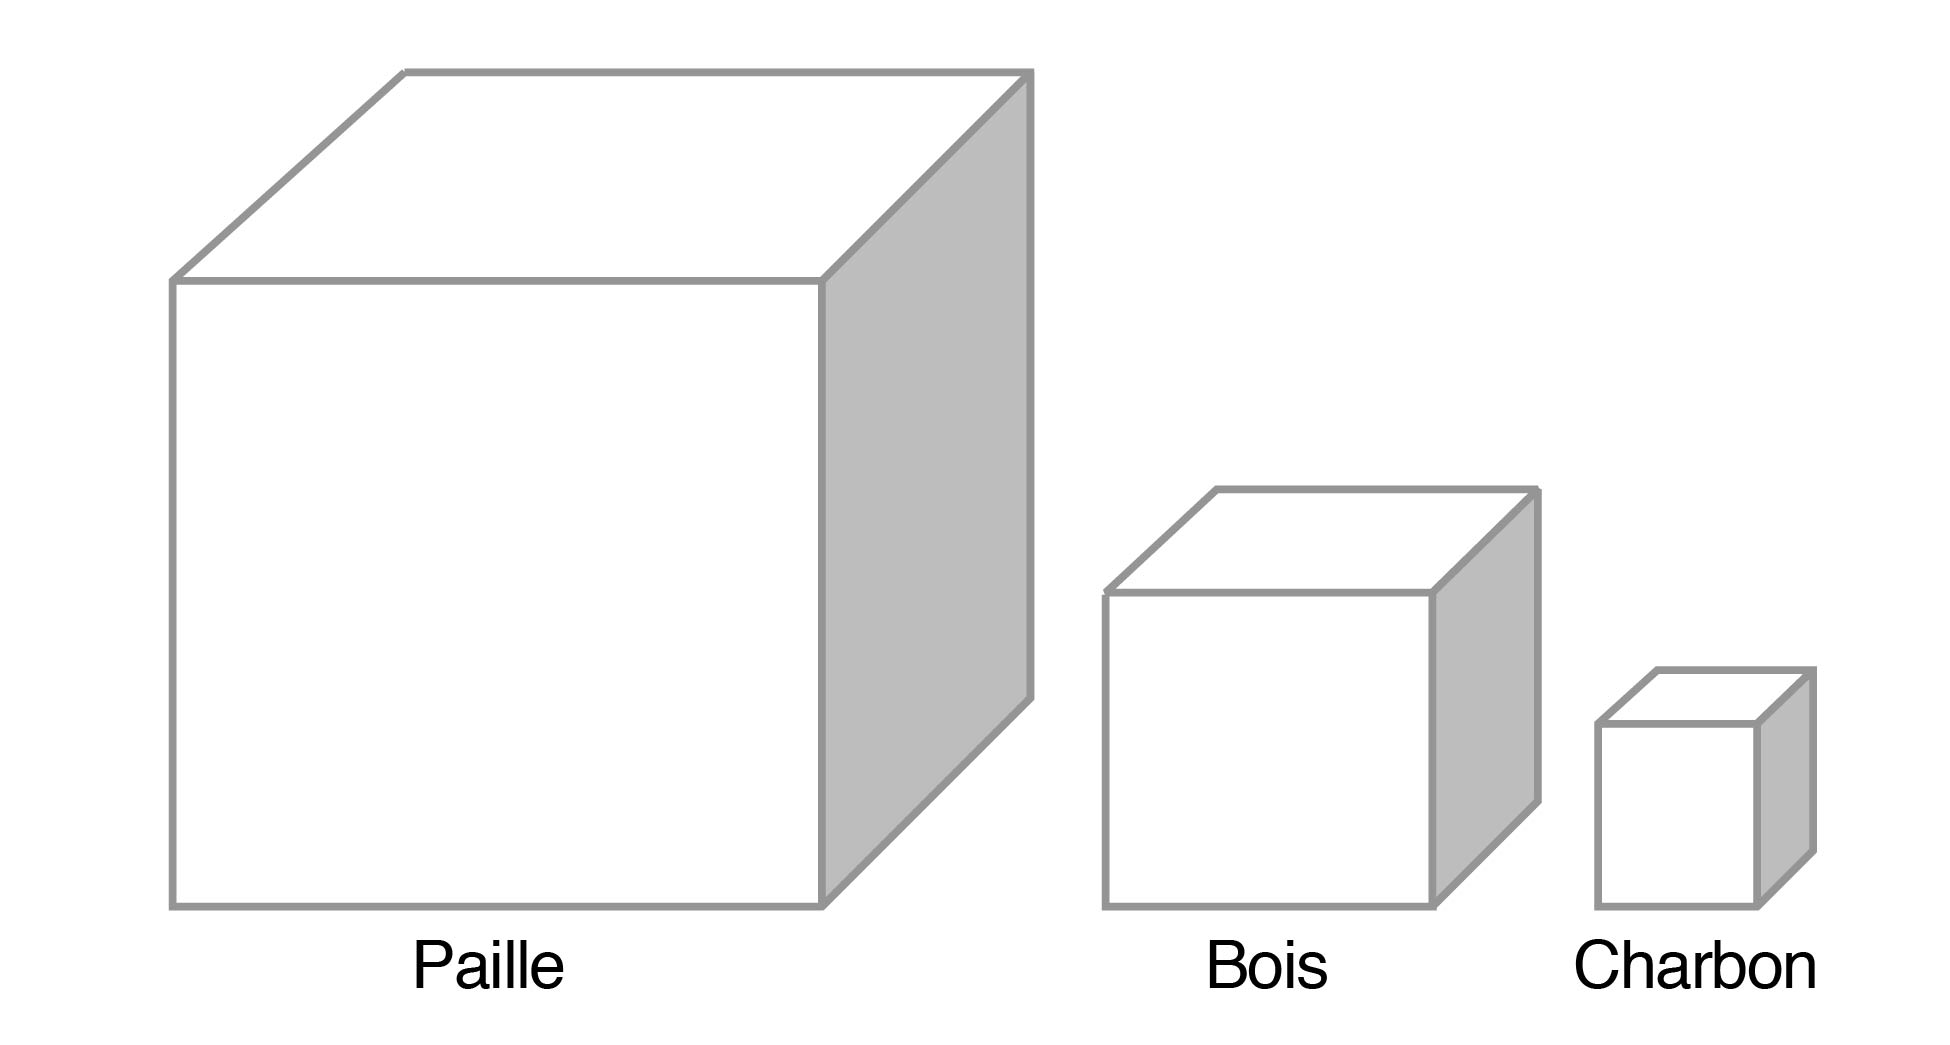 Illustration contenant trois cubes, le plus grand portant le mot paille, suivi d’un plus petit au milieu portant le mot bois, puis d’un petit cube portant le mot charbon. Ce diagramme illustre les volumes de ces matières non transformées ayant une densité d’énergie équivalente.